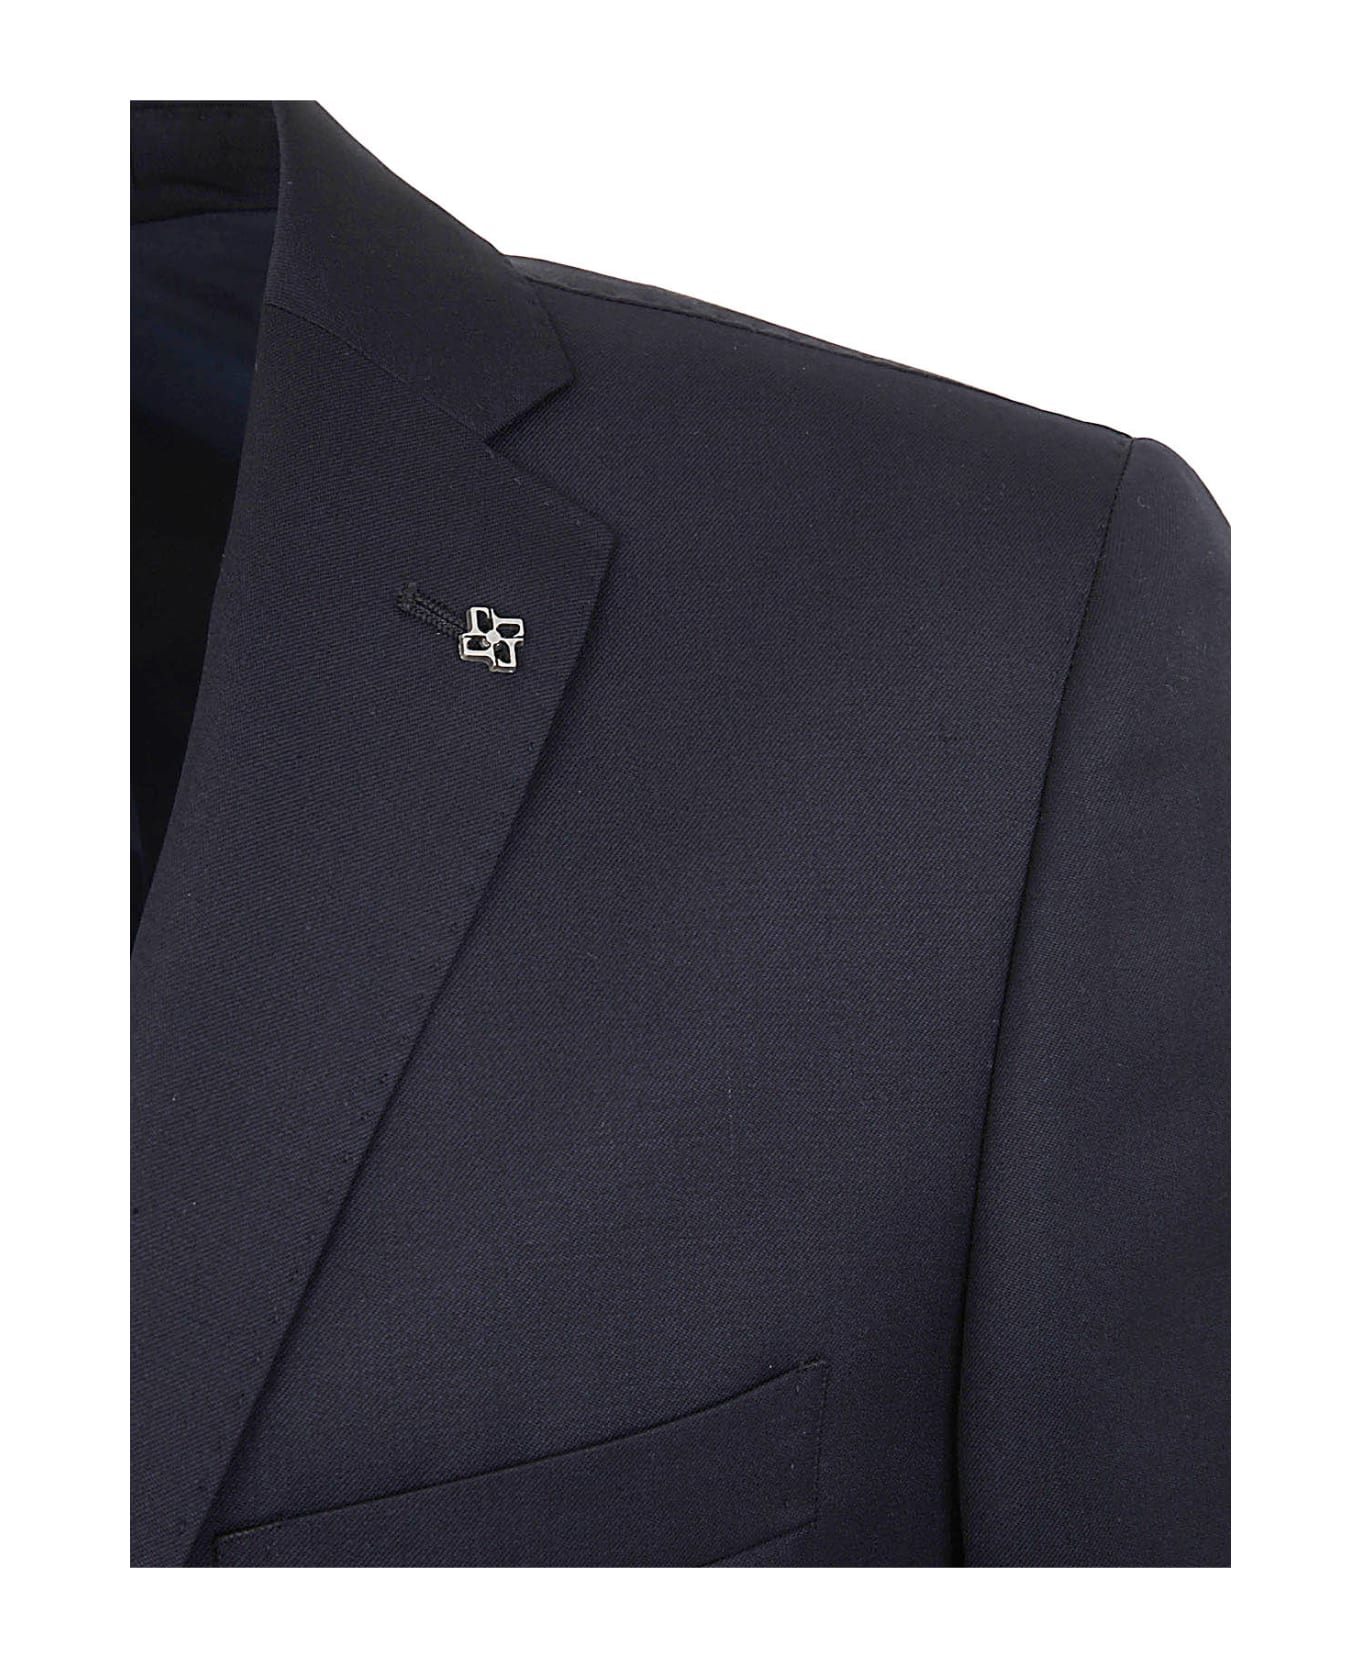 Tagliatore Elegant Trouser Suit - Navy